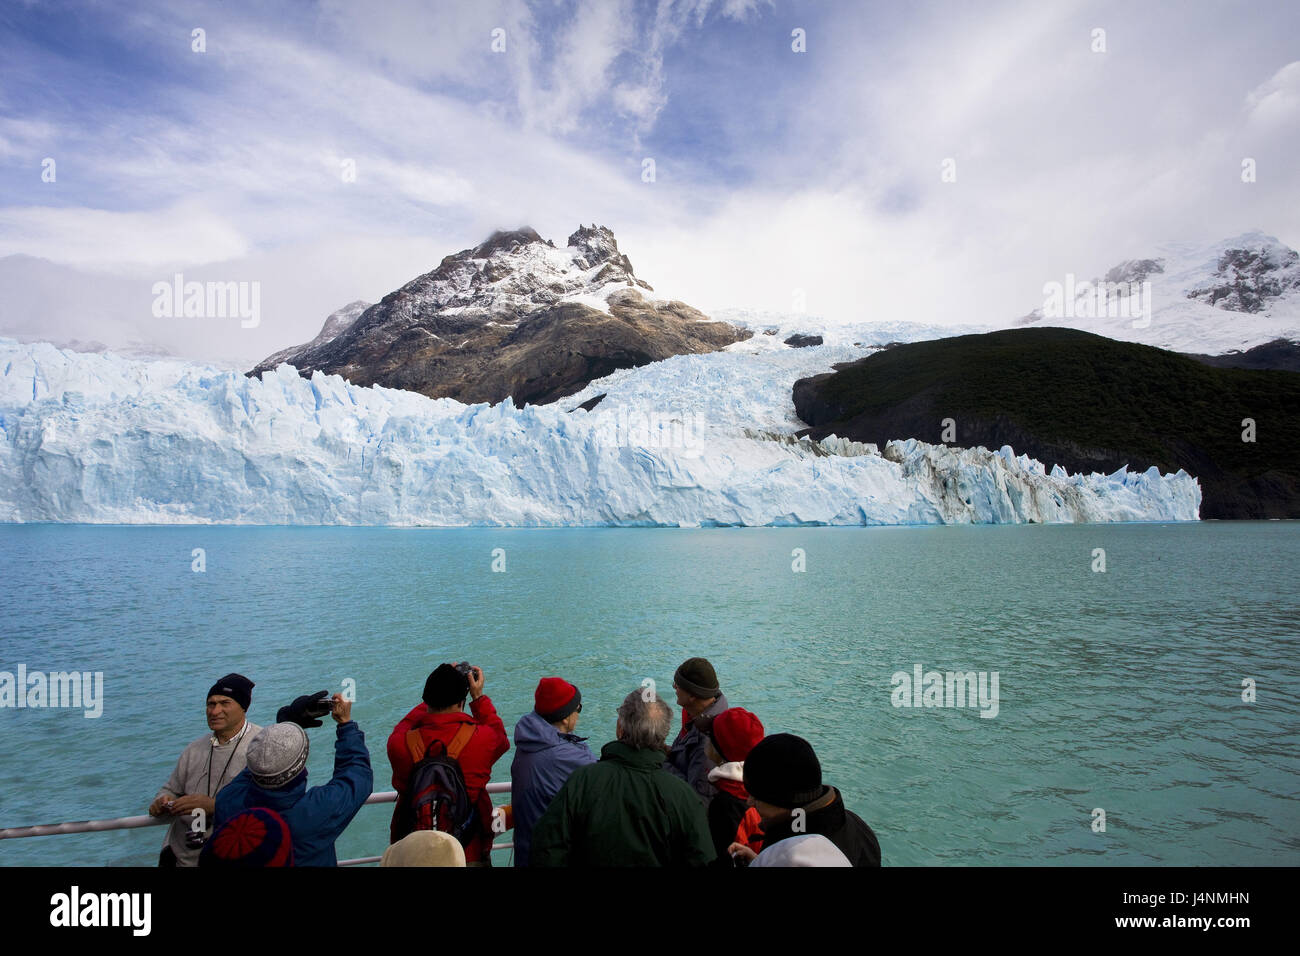 Argentina, Patagonia, Lago Argentino, ghiacciaio Spegazzini, lingua del ghiacciaio, imbarcazione turistica, nessun modello di rilascio, Foto Stock